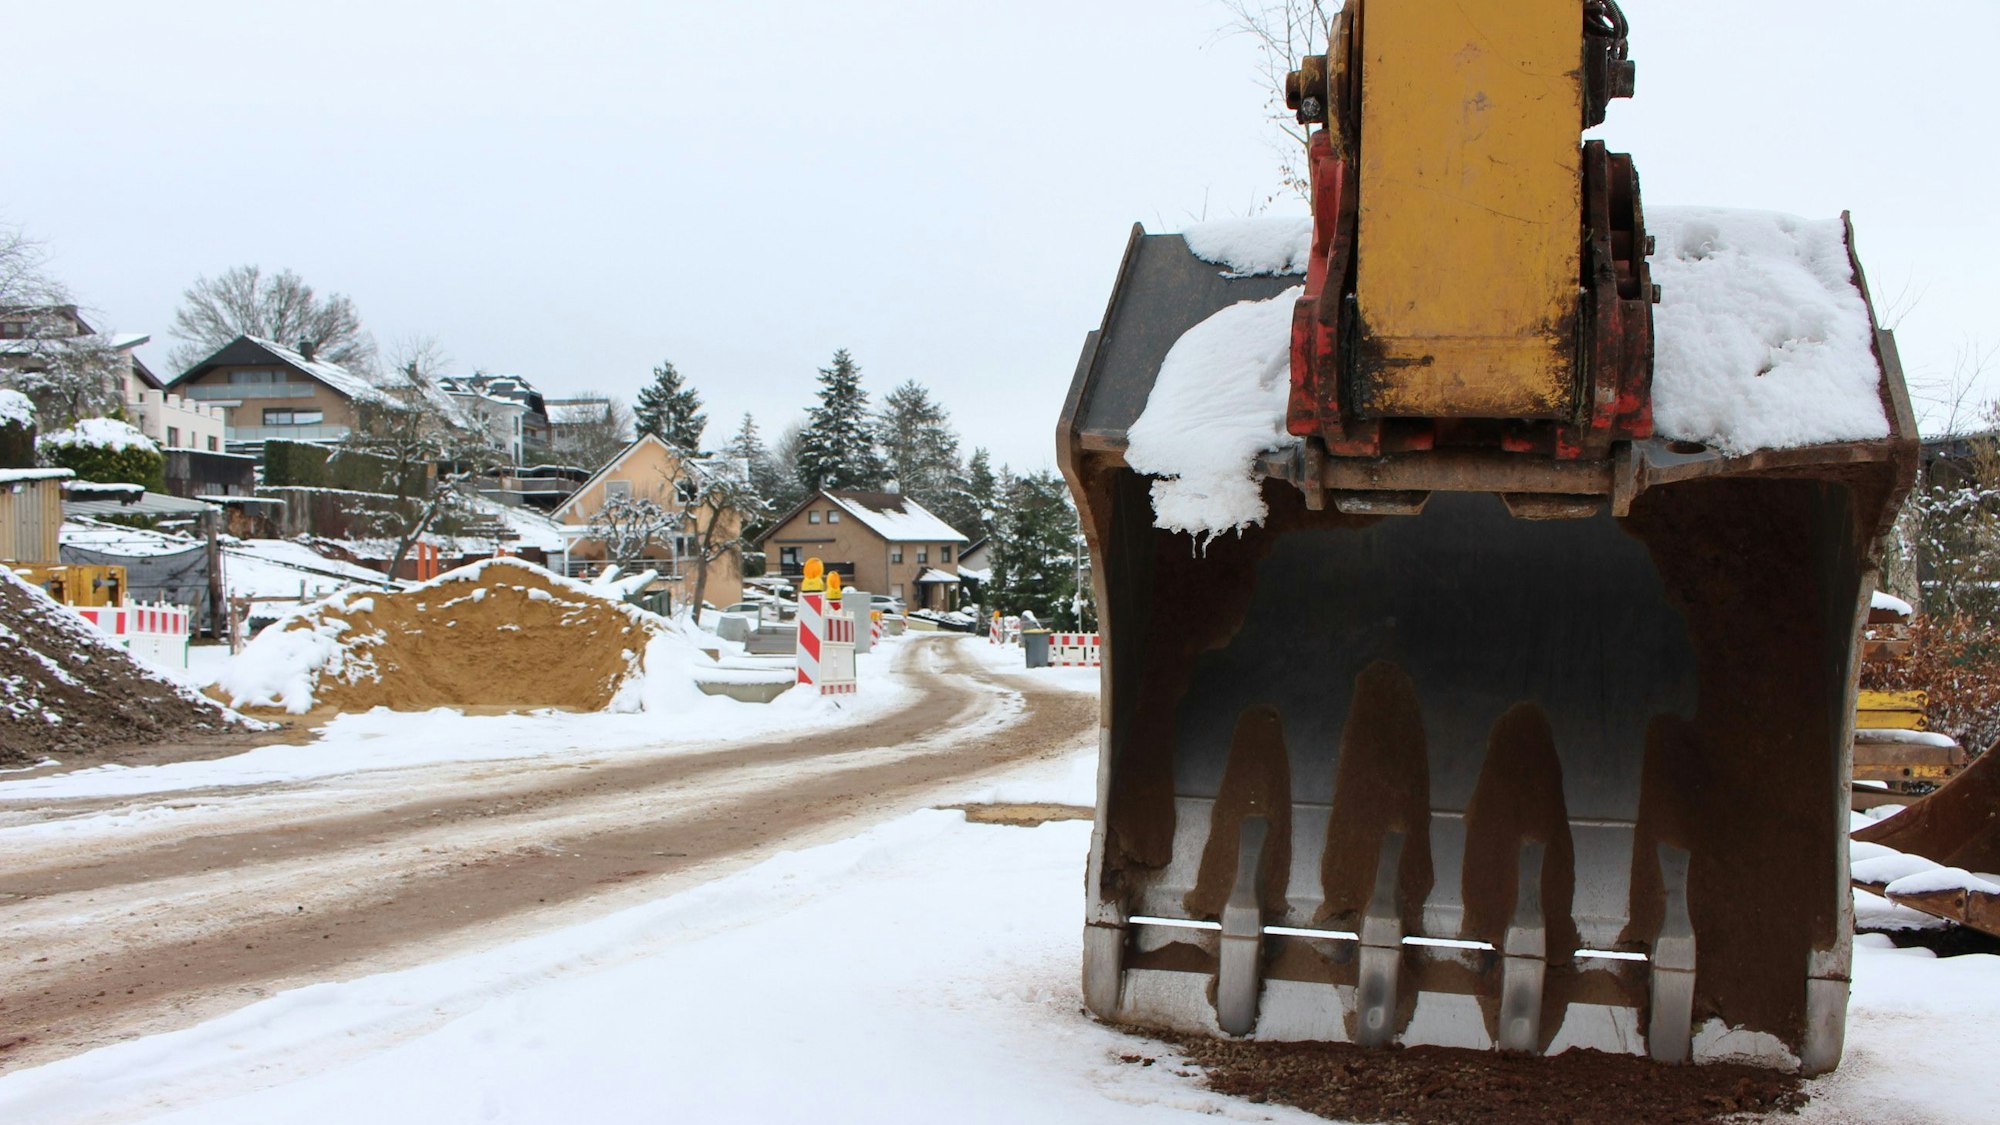 Eine Baggerschaufel steht an einer Straßenbaustelle, auf der wegen des Schnees nicht gearbeitet wird.